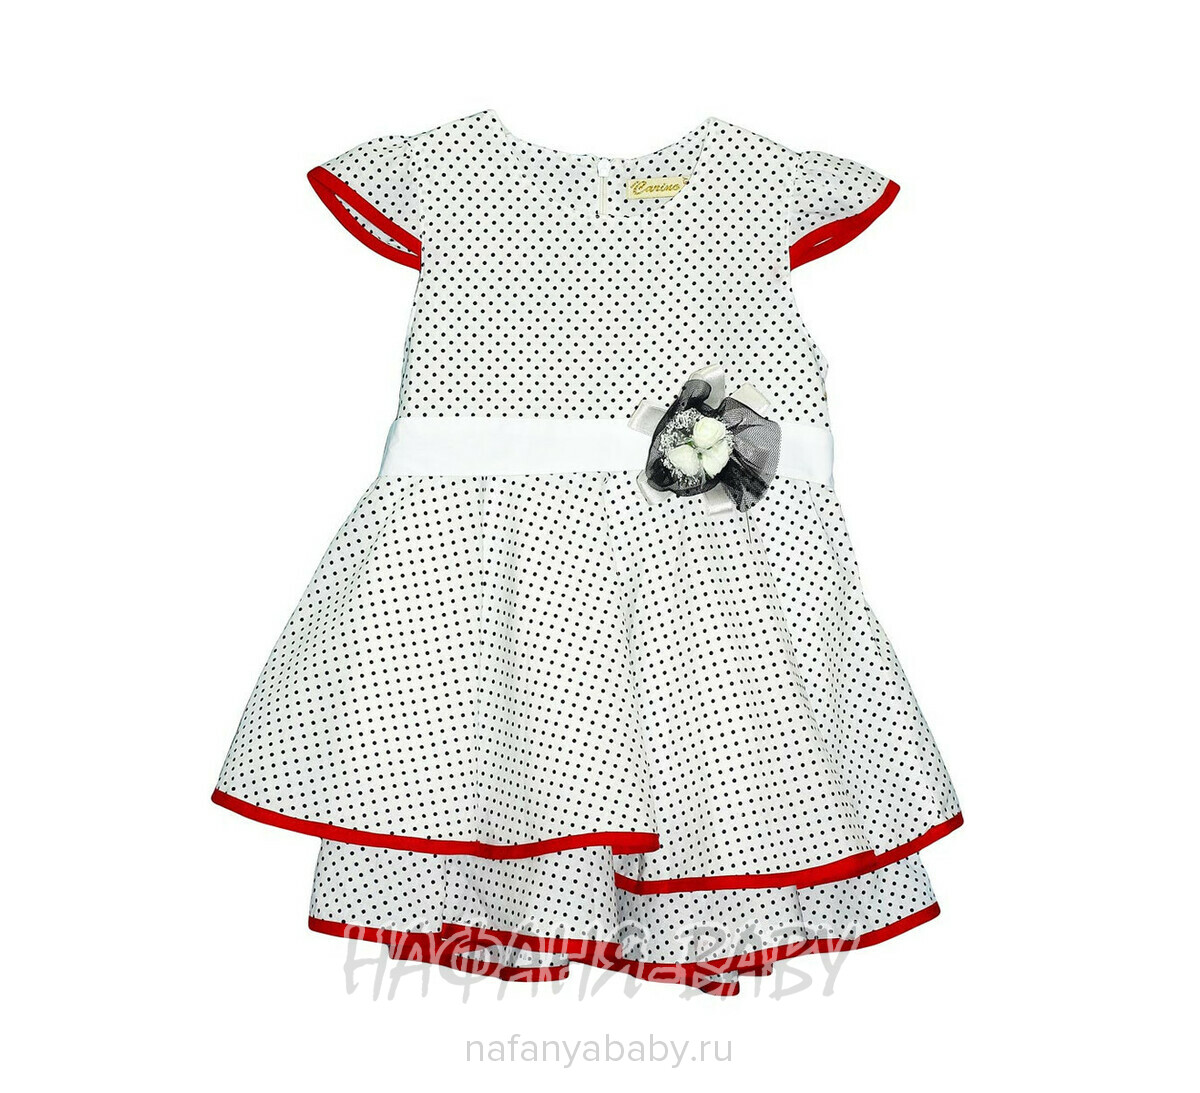 Детское платье CARINO, купить в интернет магазине Нафаня. арт: 2130.